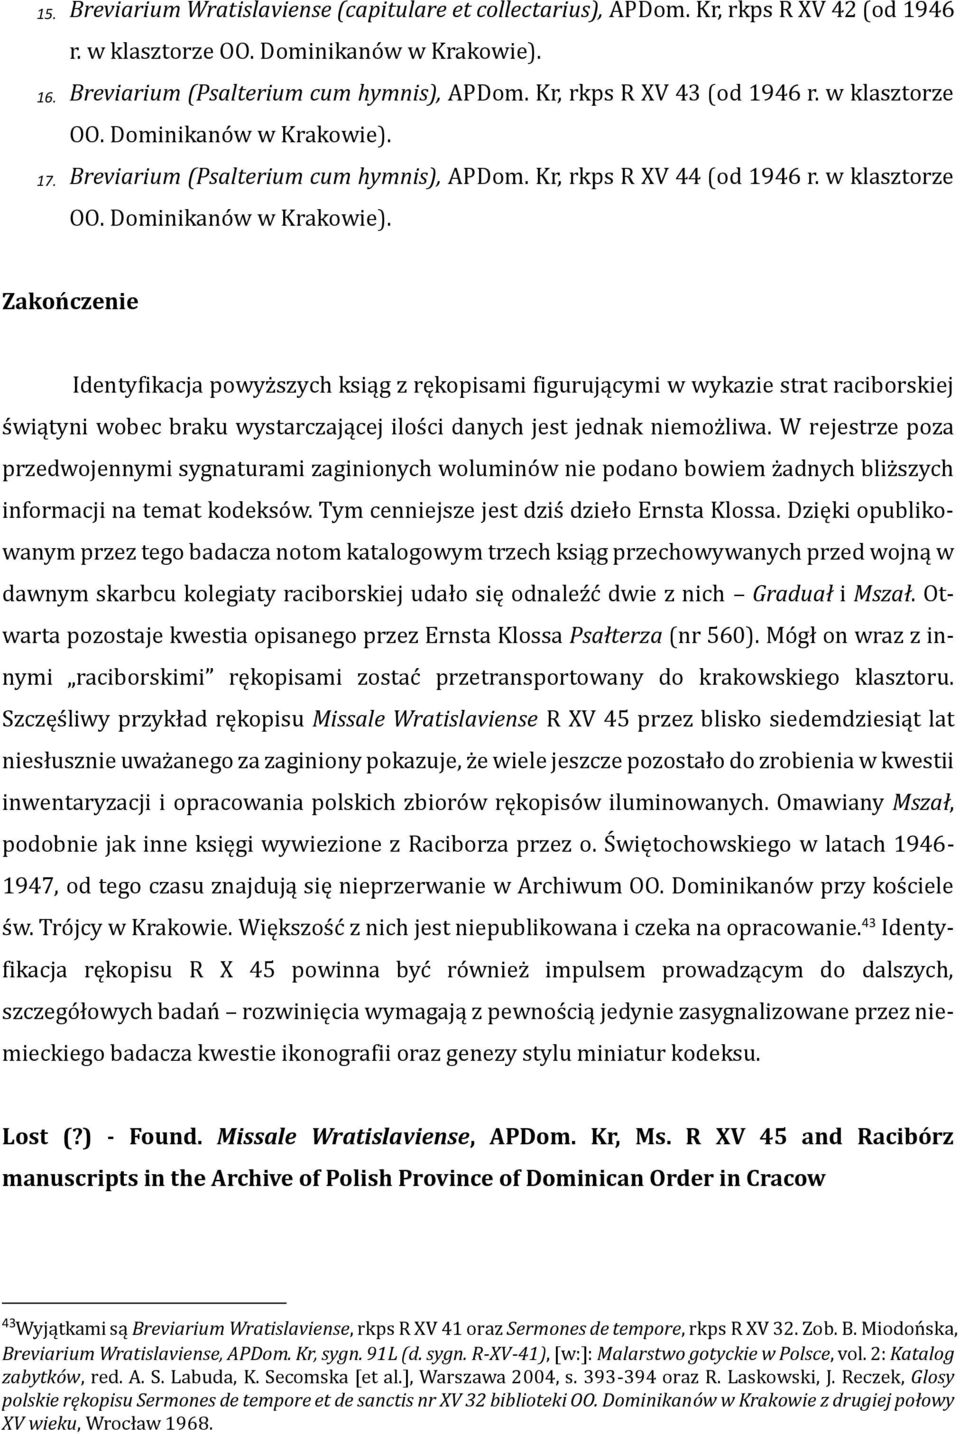 17. Breviarium (Psalterium cum hymnis), APDom. Kr, rkps R XV 44 (od 1946 r. w klasztorze OO. Dominikanów w Krakowie).